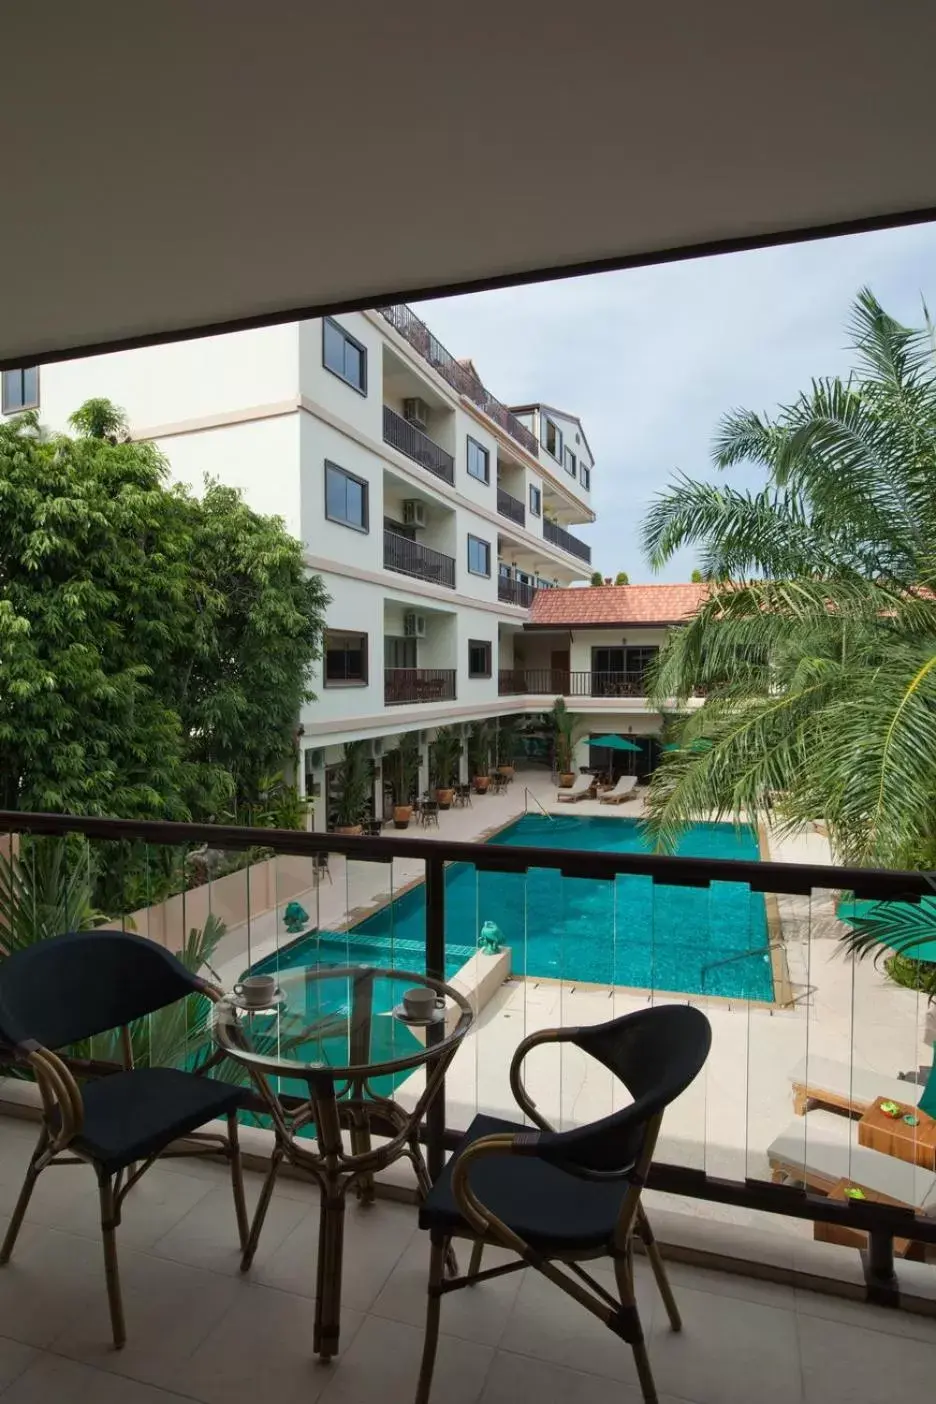 Balcony/Terrace, Swimming Pool in Baan Souy Resort